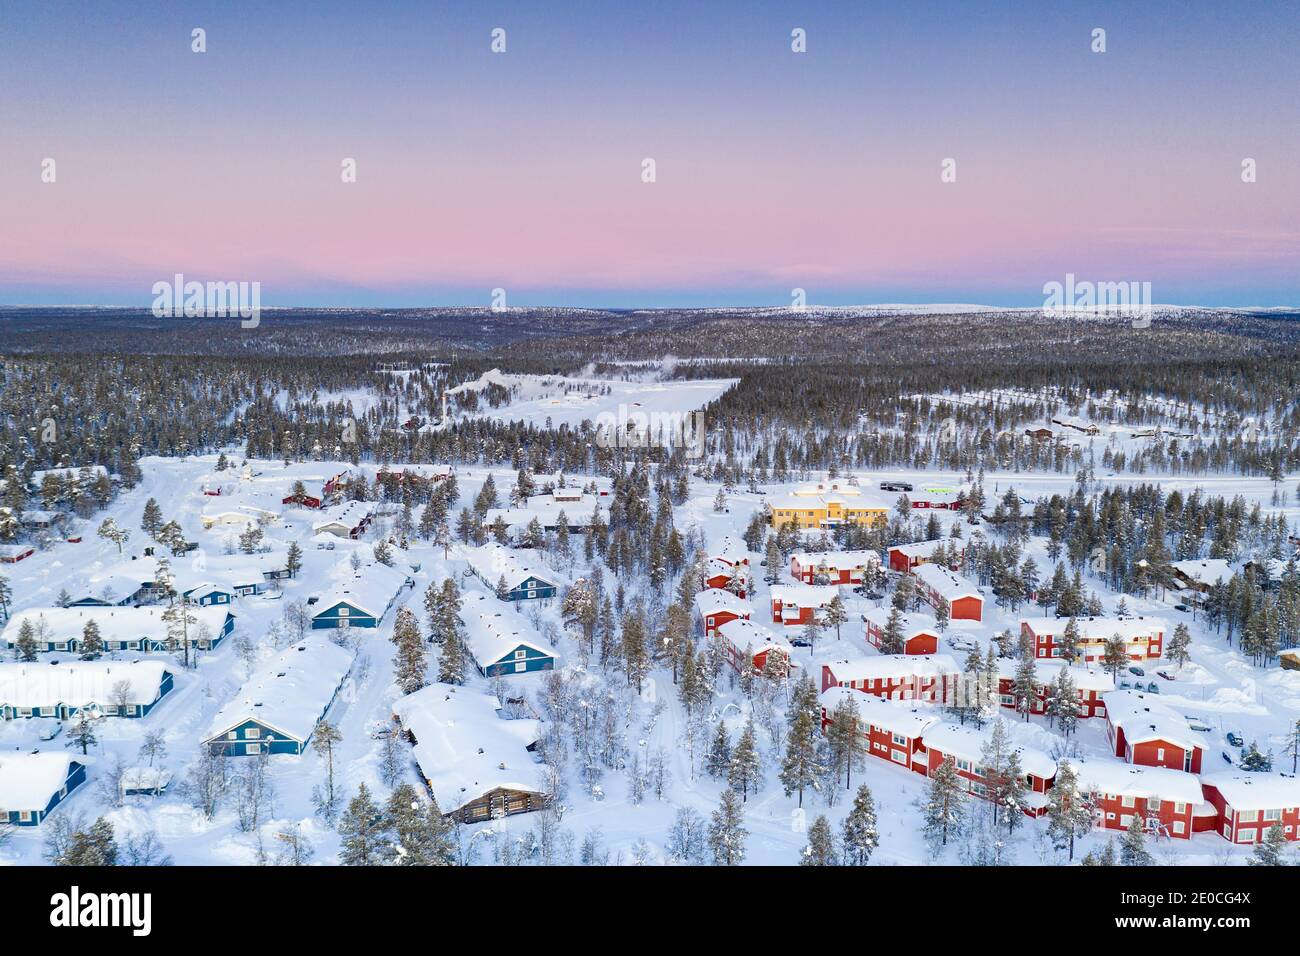 Luftaufnahme des schneebedeckten Waldes und Saariselka Winter Touristenort bei Sonnenaufgang, Inari, Lappland, Finnland, Europa Stockfoto